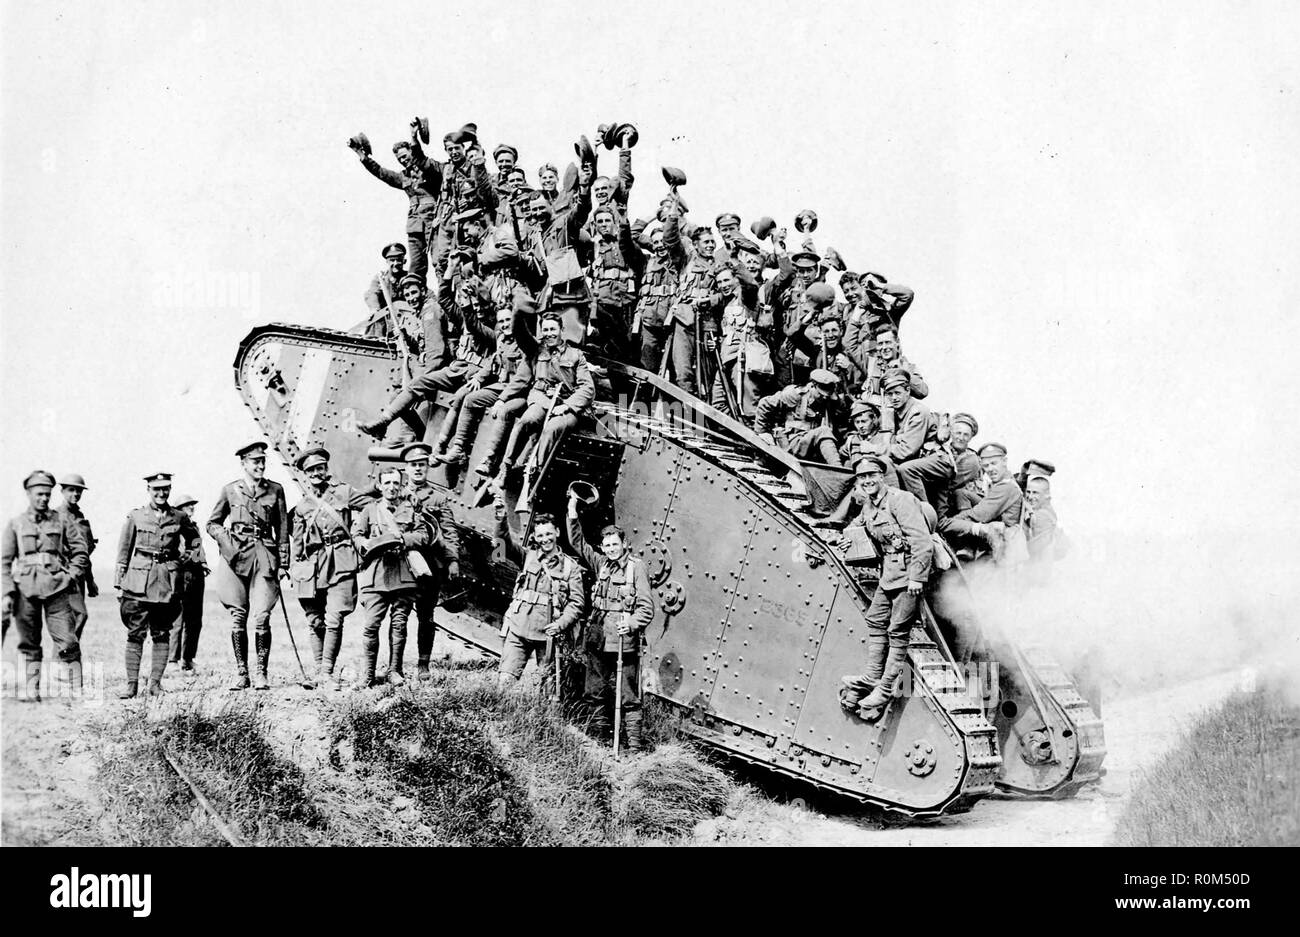 WW1: i membri del quinto montato canadese fucili di ritorno dal fronte durante la Battaglia di Amiens in agosto 1918. Foto: Canada archivi Foto Stock